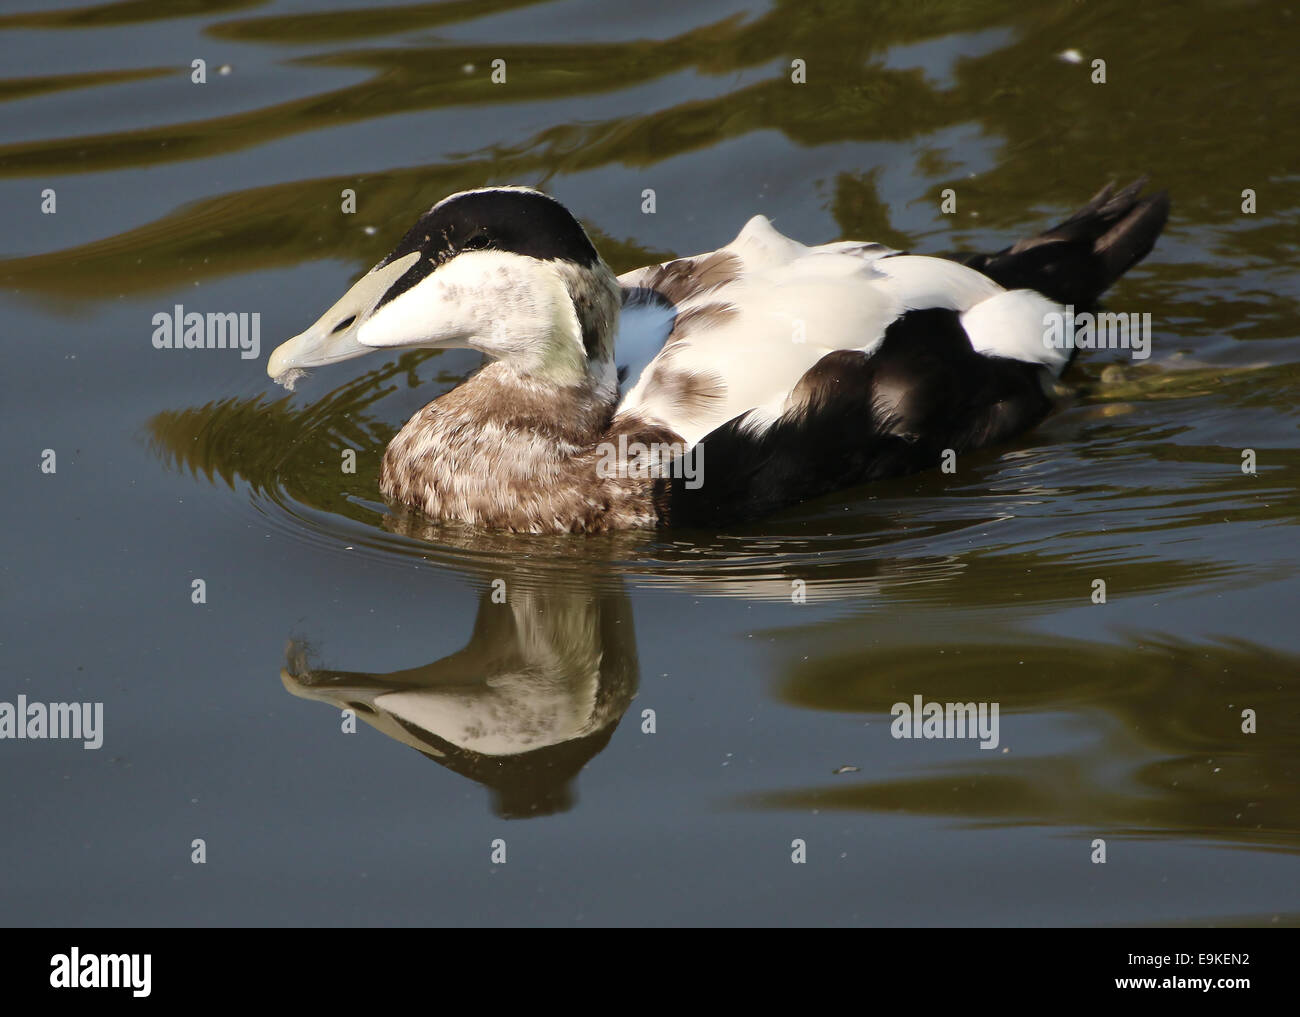 Male Common Eider duck (Somateria mollissima) swimming in a lake Stock Photo